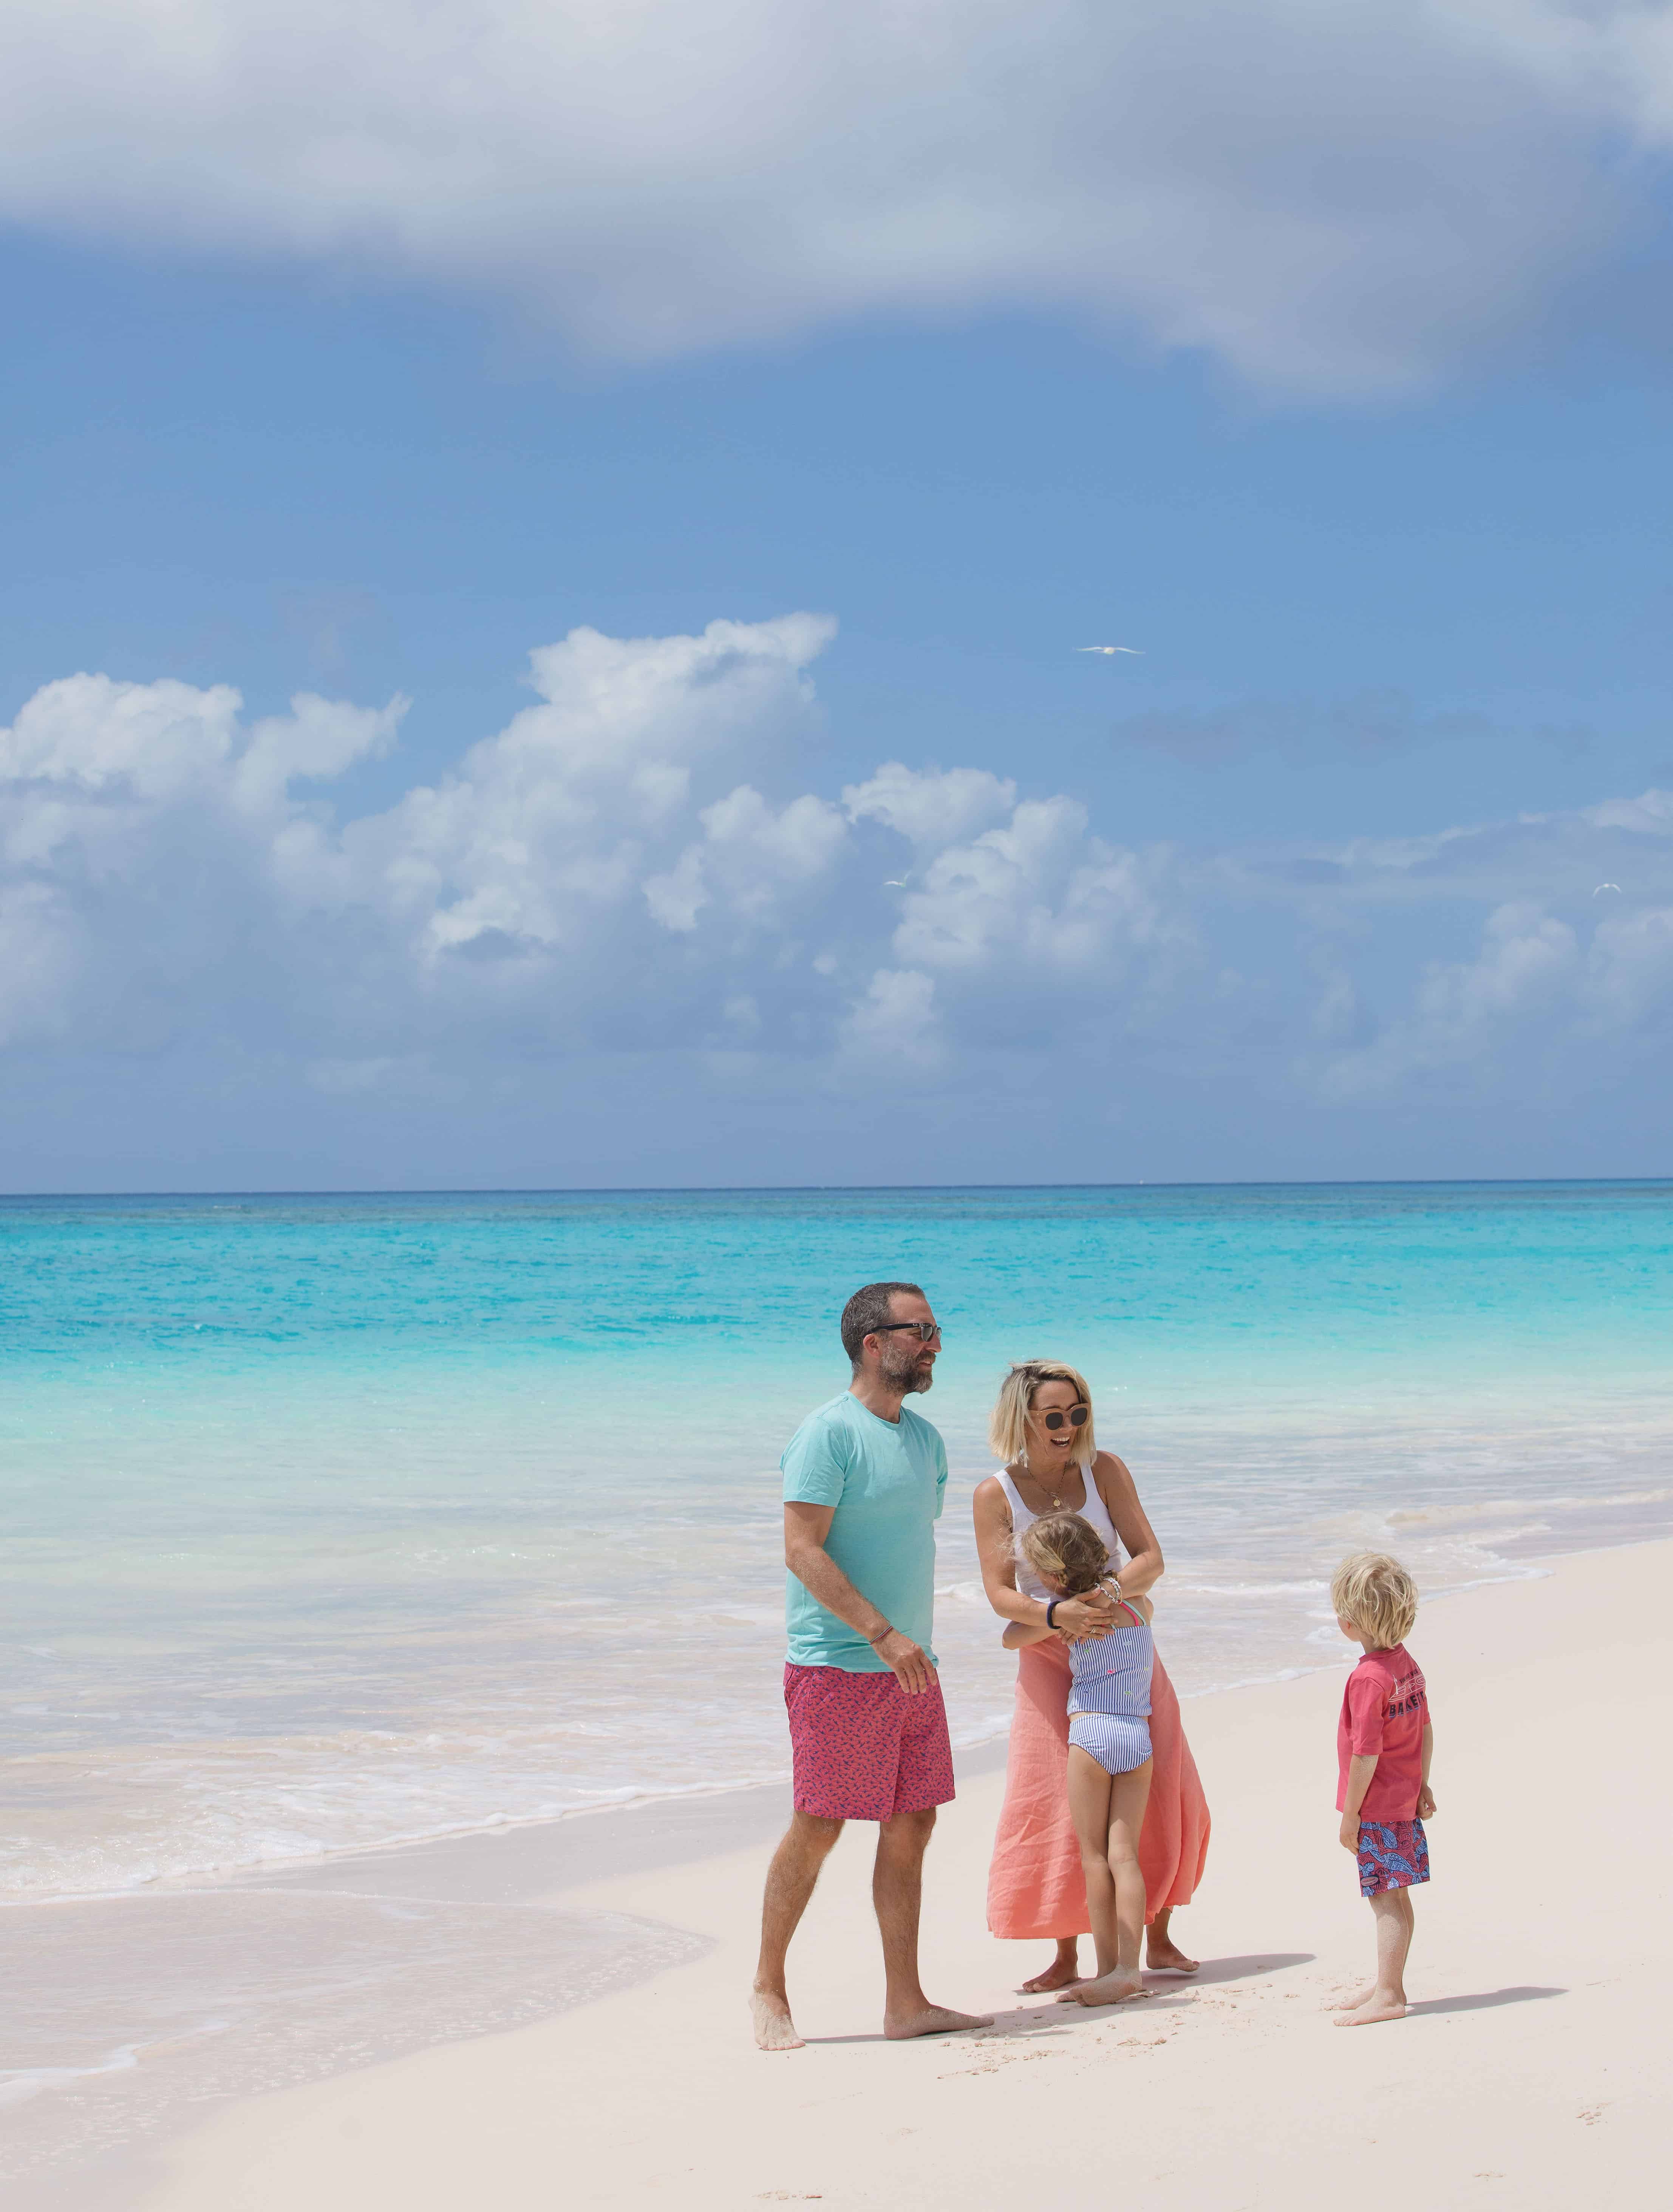 Family enjoying a day on the sunny Caribbean beach.